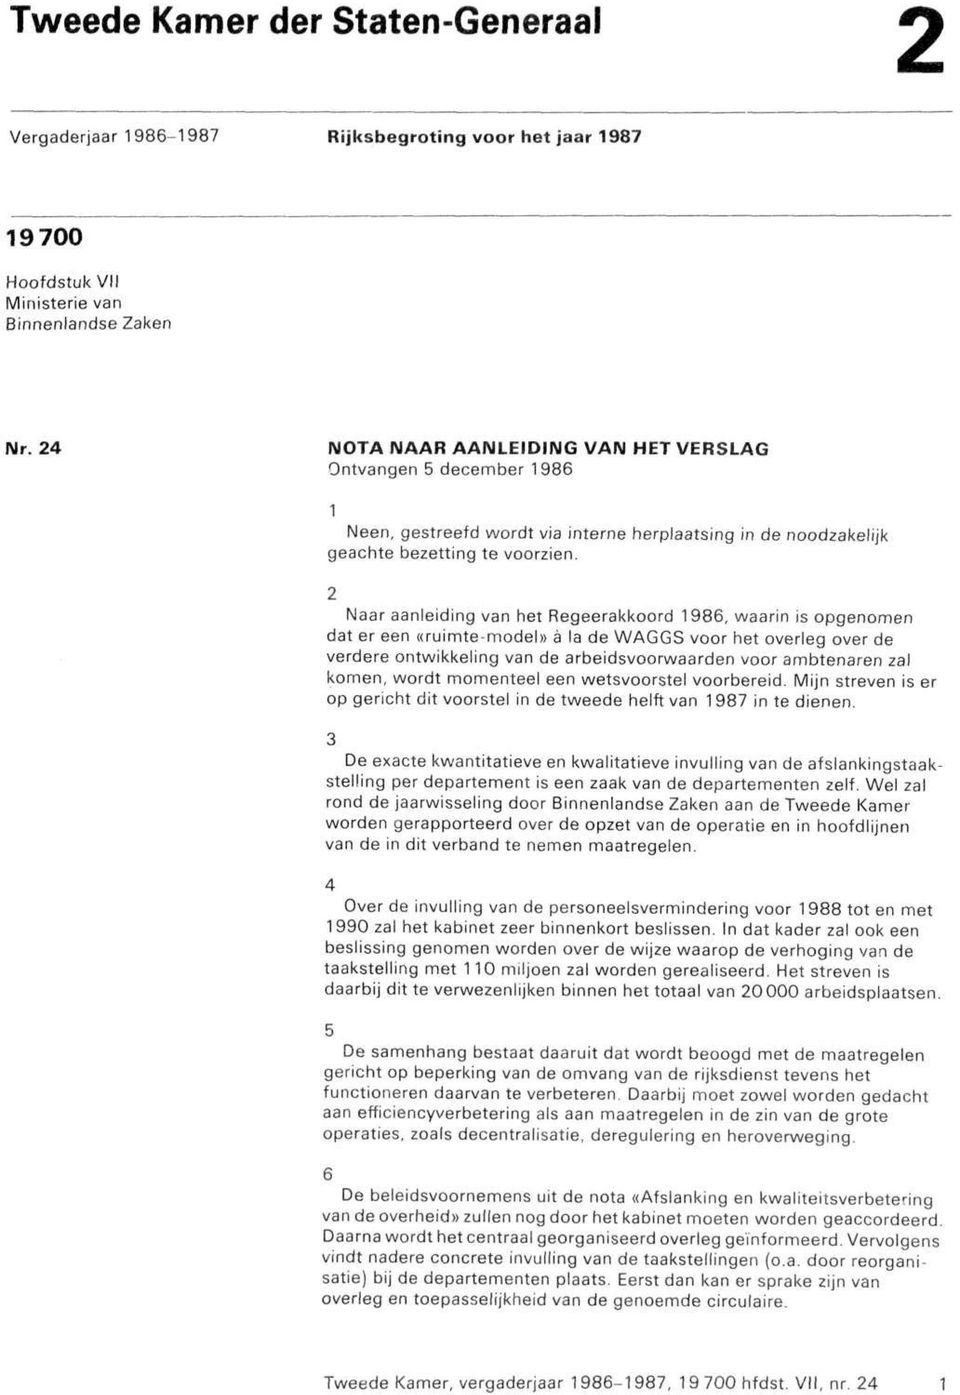 2 Naar aanleiding van het Regeerakkoord 1986, waarin is opgenomen dat er een «ruimte-model» a la de WAGGS voor het overleg over de verdere ontwikkeling van de arbeidsvoorwaarden voor ambtenaren zal